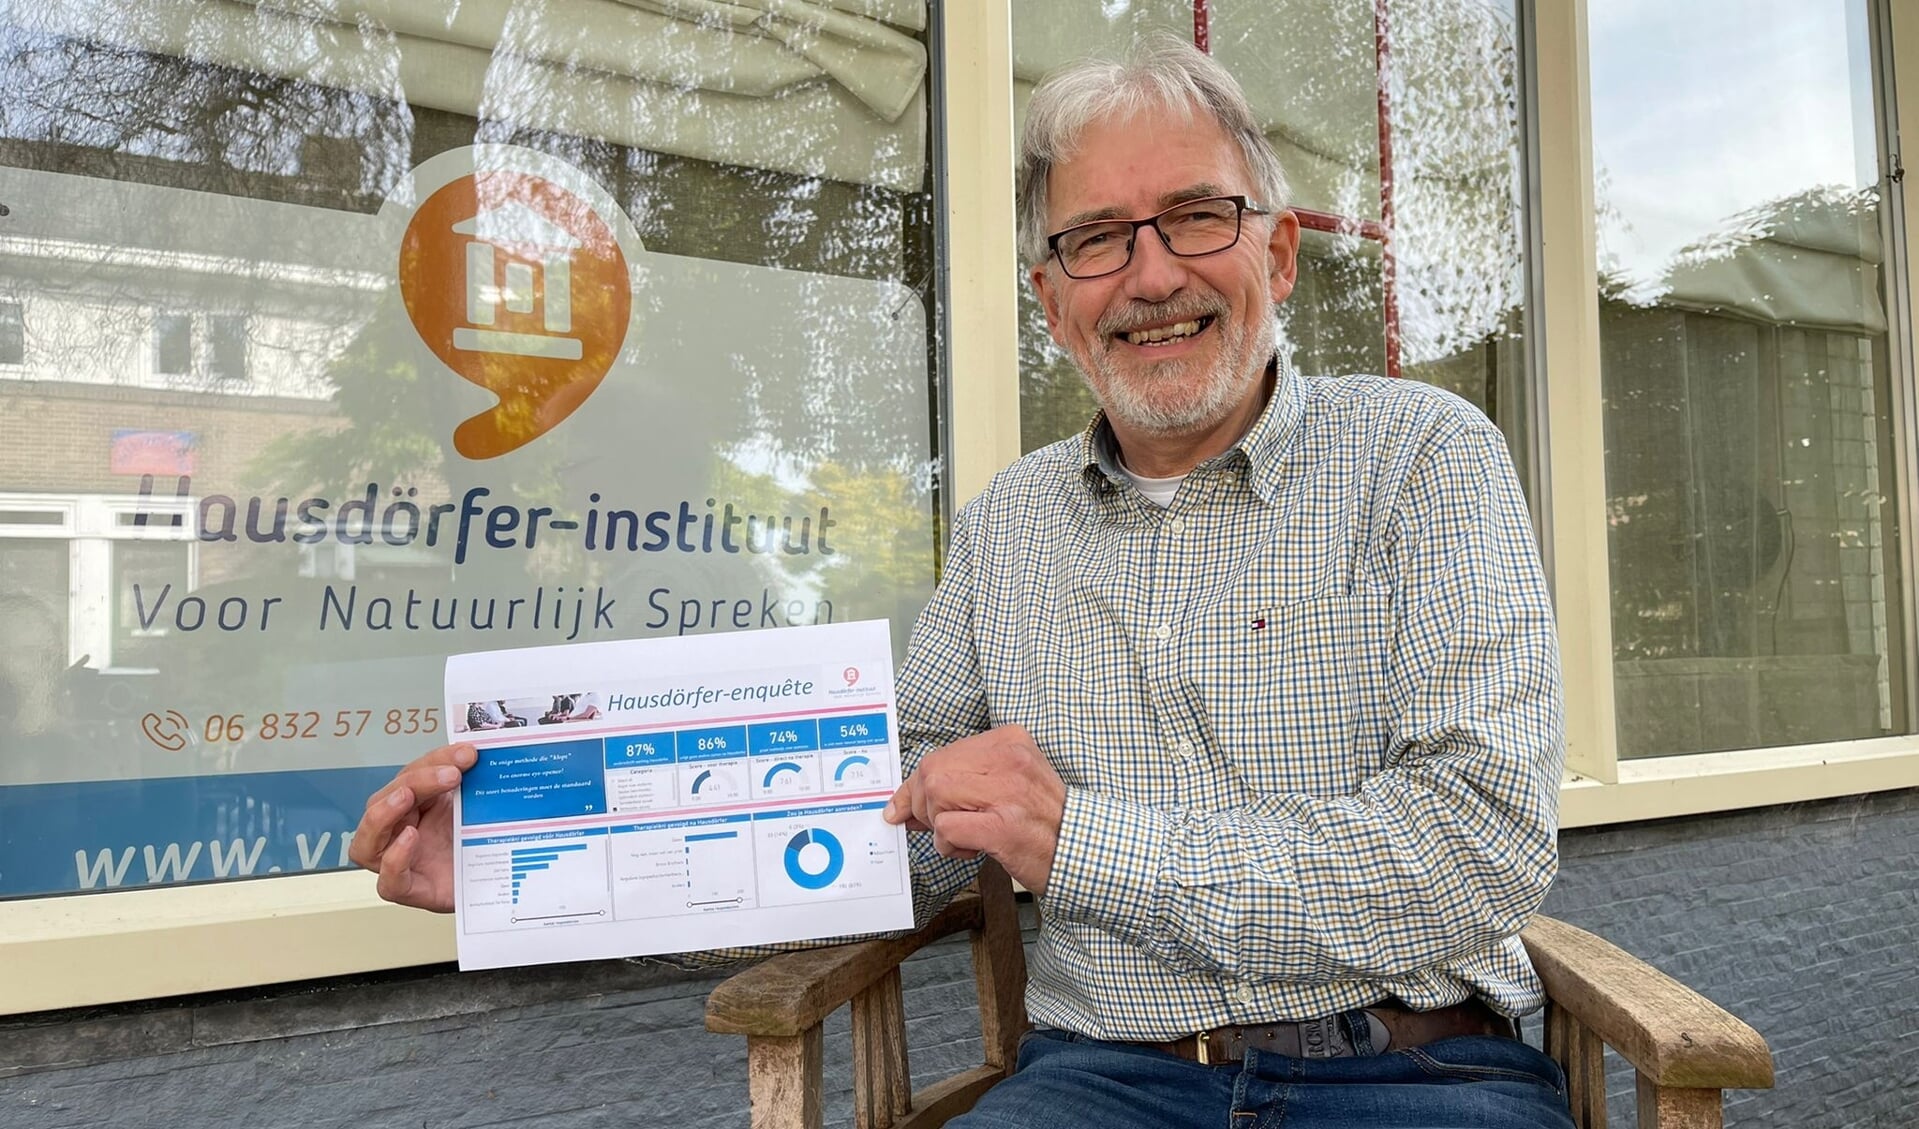 Stottertherapeut Jan Heuvel uit Zutphen toont trots de positieve resultaten van een wetenschappelijk onderzoek naar de werking van de door hem aangeboden Hausdörfer-methode. Foto: Wendy Oldenhof